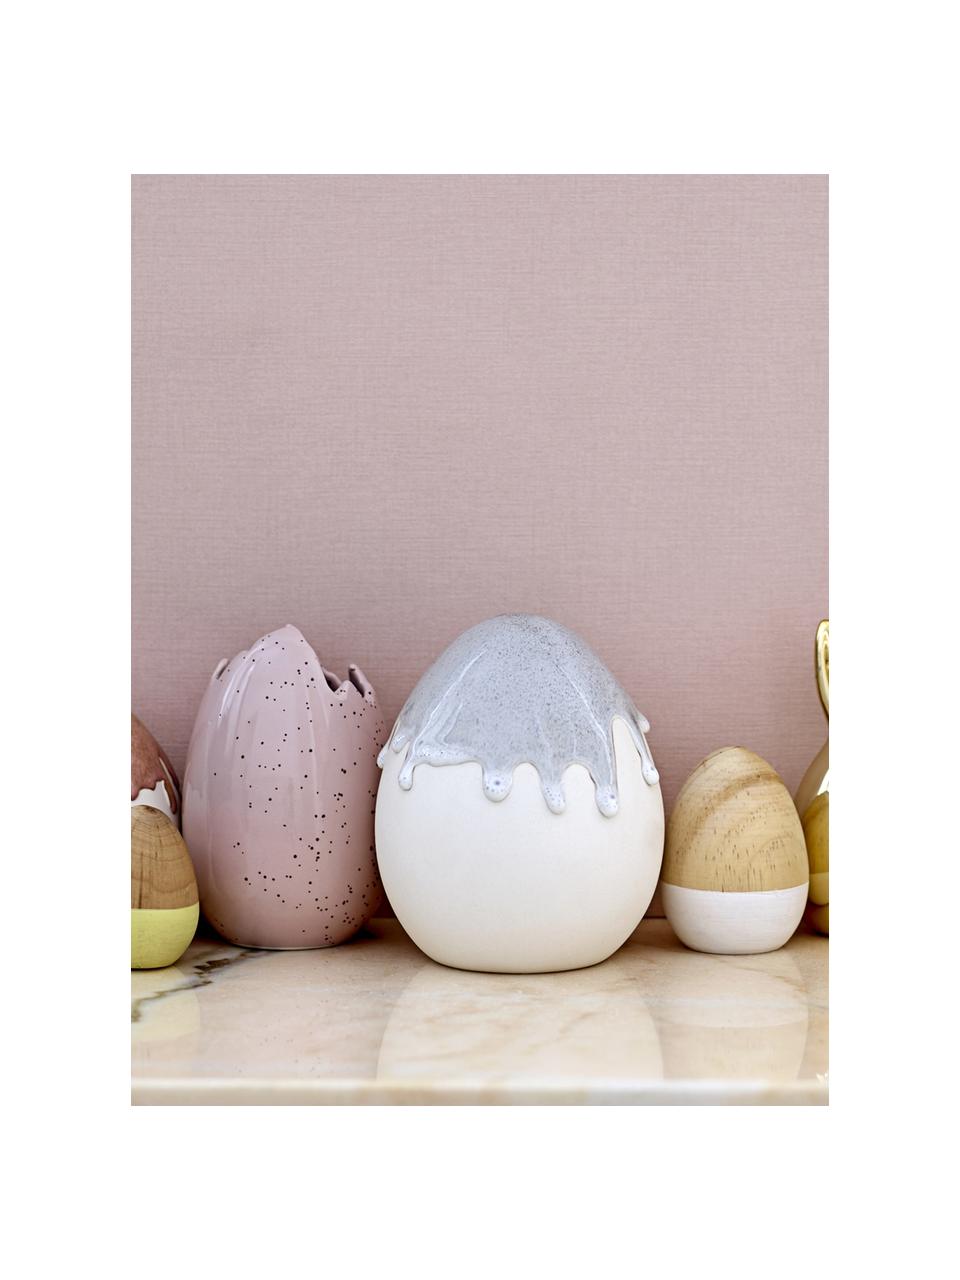 Dekoracja wielkanocna Egg, Drewno brzozowe, lakierowane, Drewno naturalne, biały, Ø 7 x 9 cm